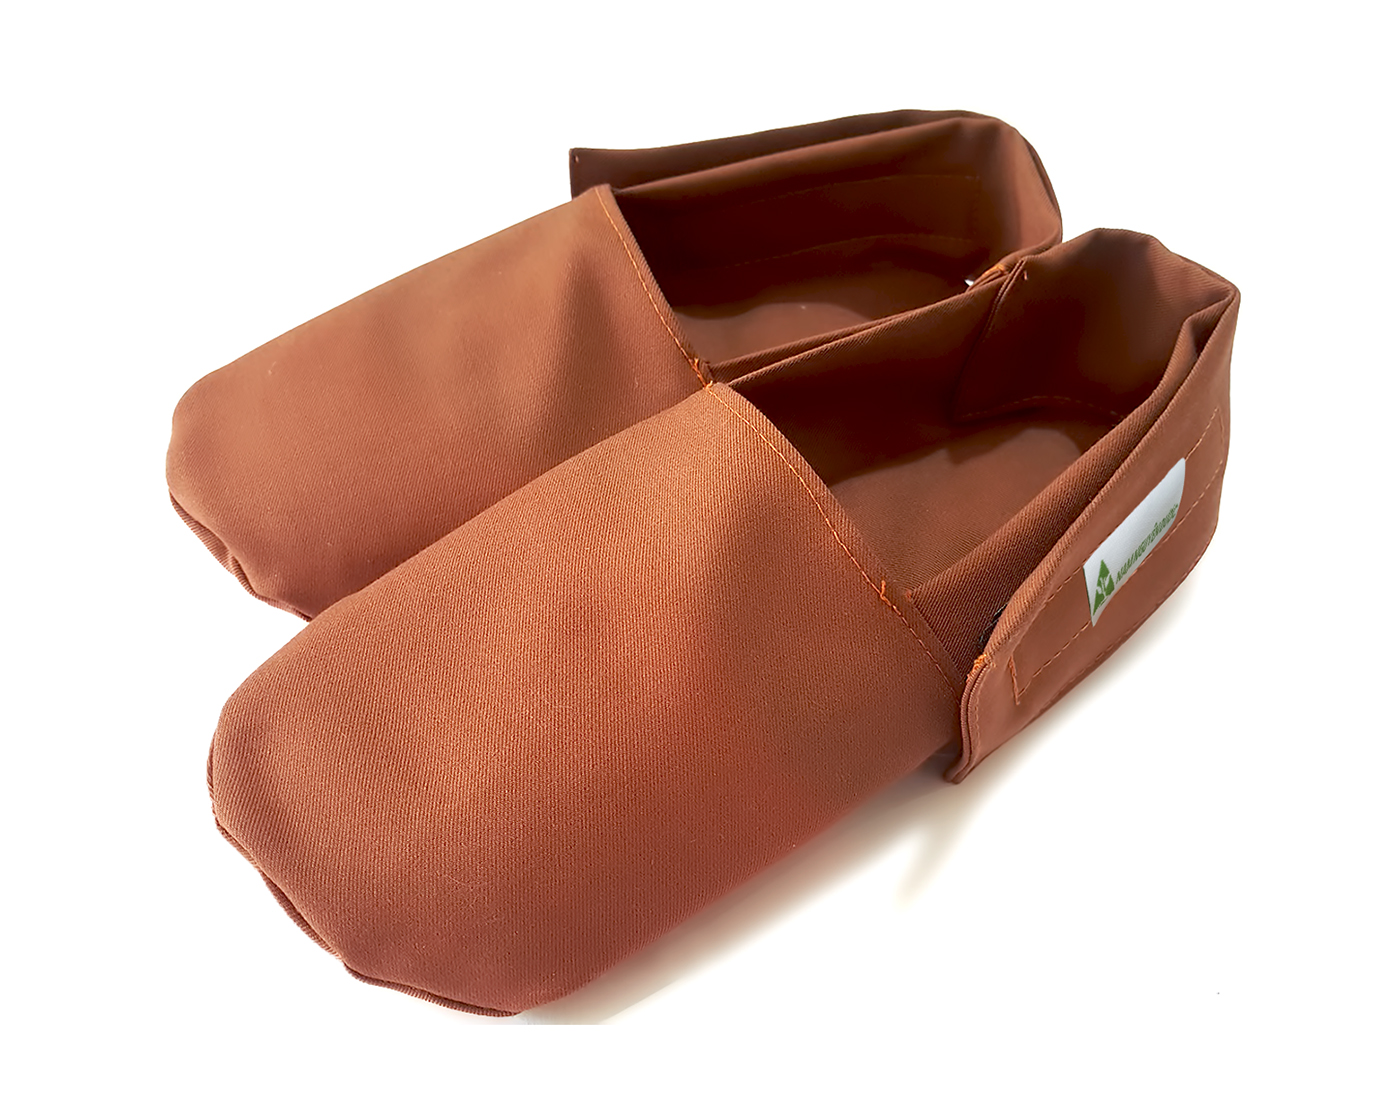 Túi thảo dược ấm chân được dùng trong liệu trình massage lưng tại Herbal Spa Đà Nẵng